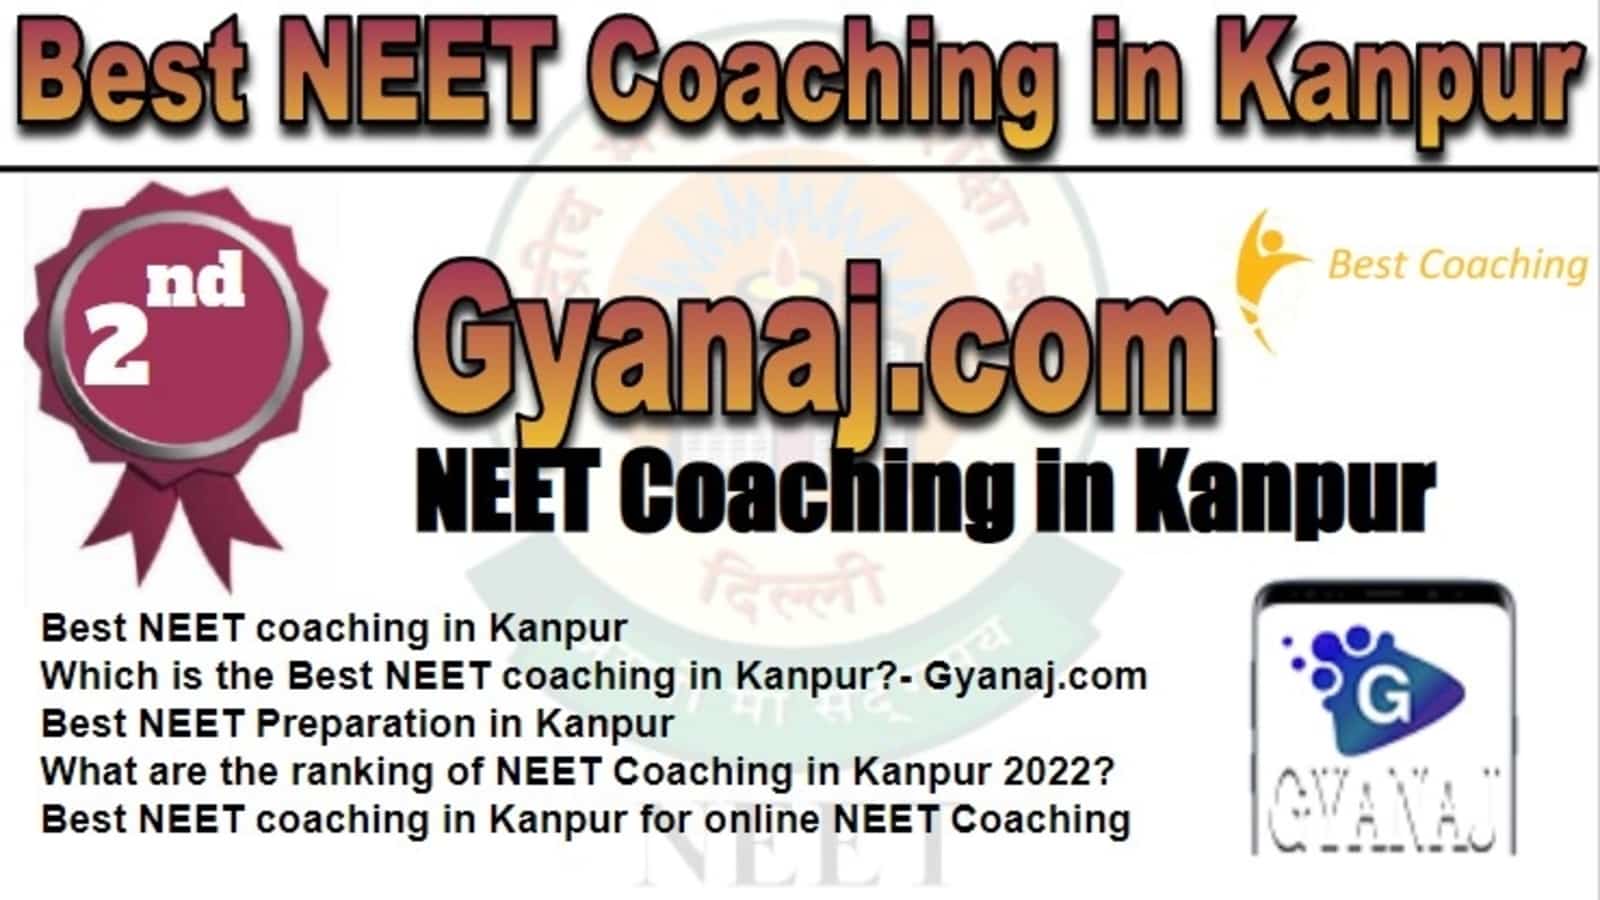 Rank 2 Best NEET Coaching In Kanpur